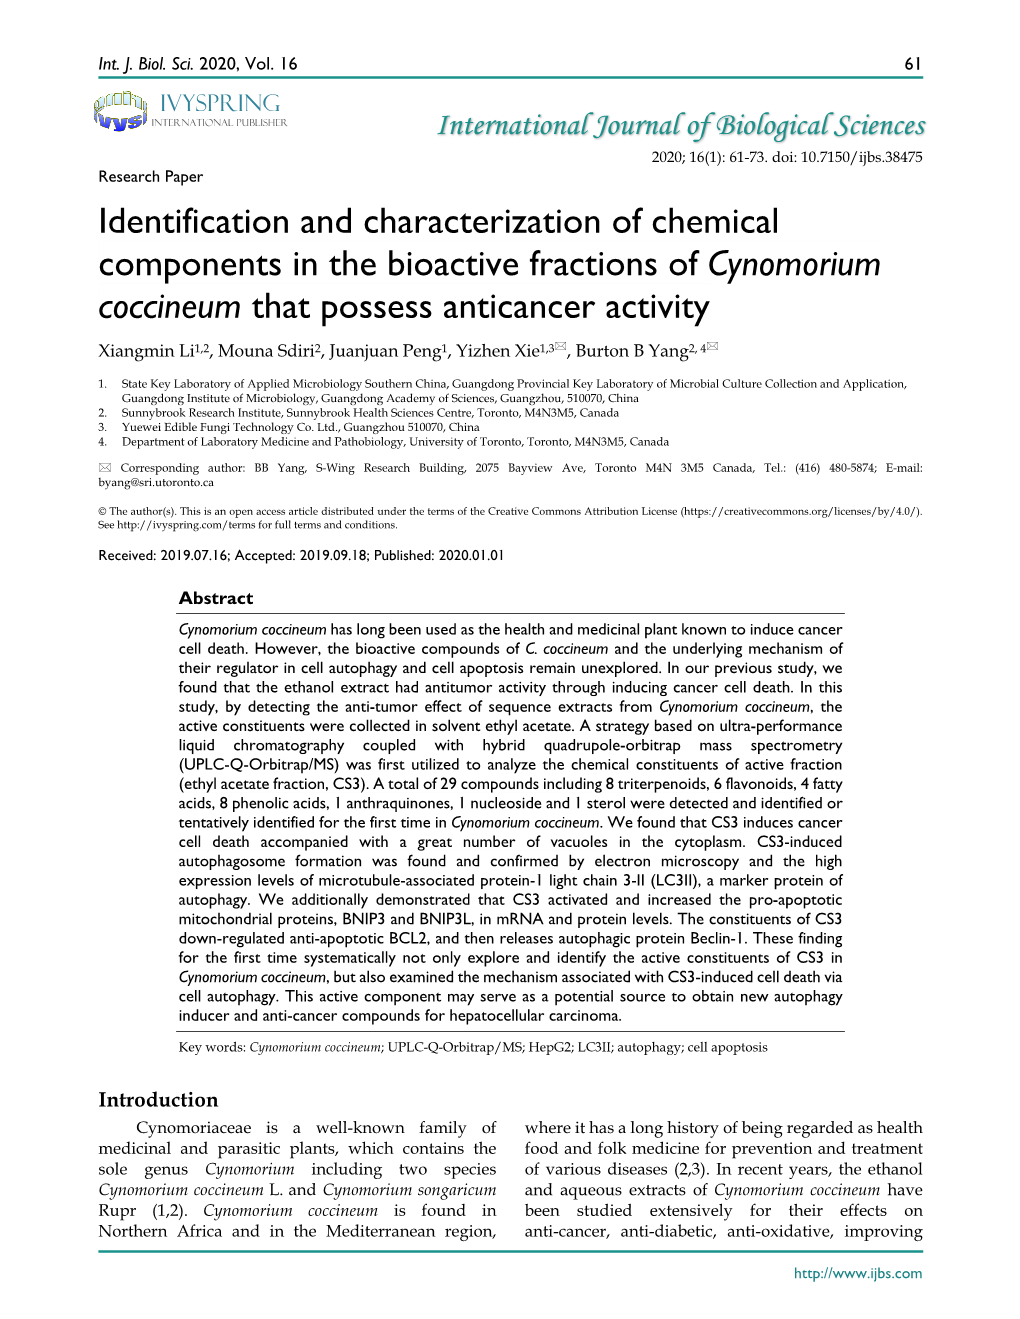 Cynomorium Coccineum That Possess Anticancer Activity Xiangmin Li1,2, Mouna Sdiri2, Juanjuan Peng1, Yizhen Xie1,3, Burton B Yang2, 4